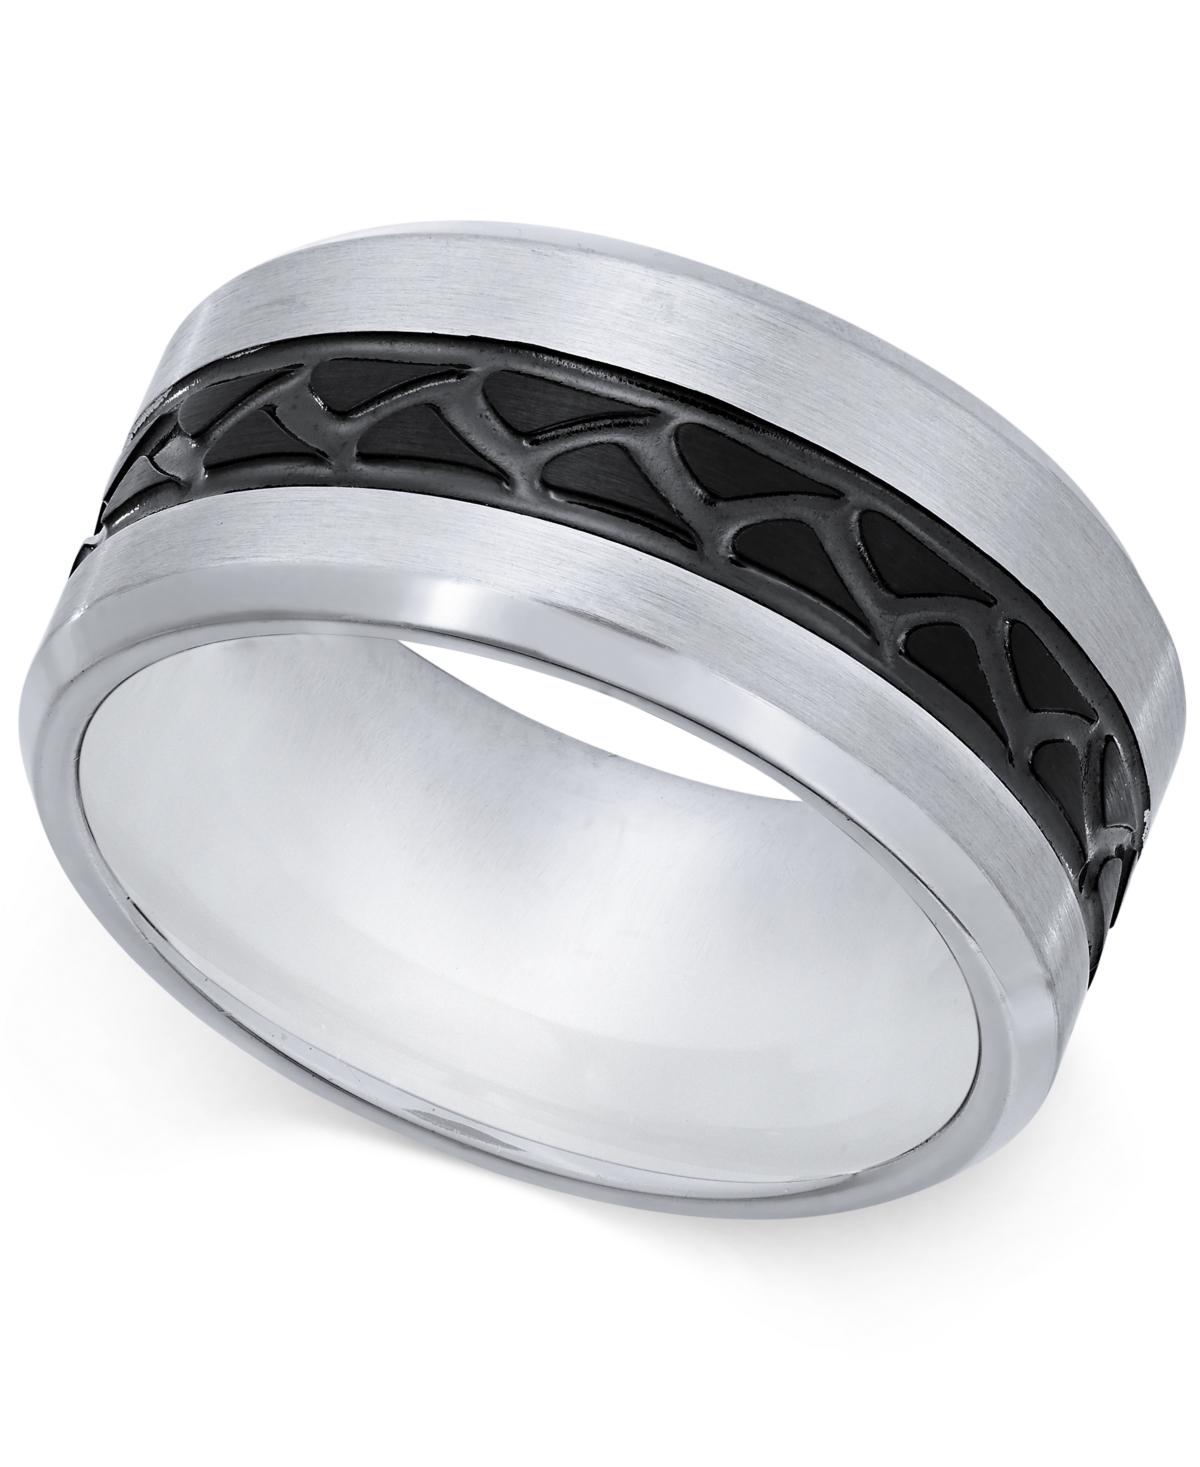 Men's Stainless Steel Tire Tread Ring - Black